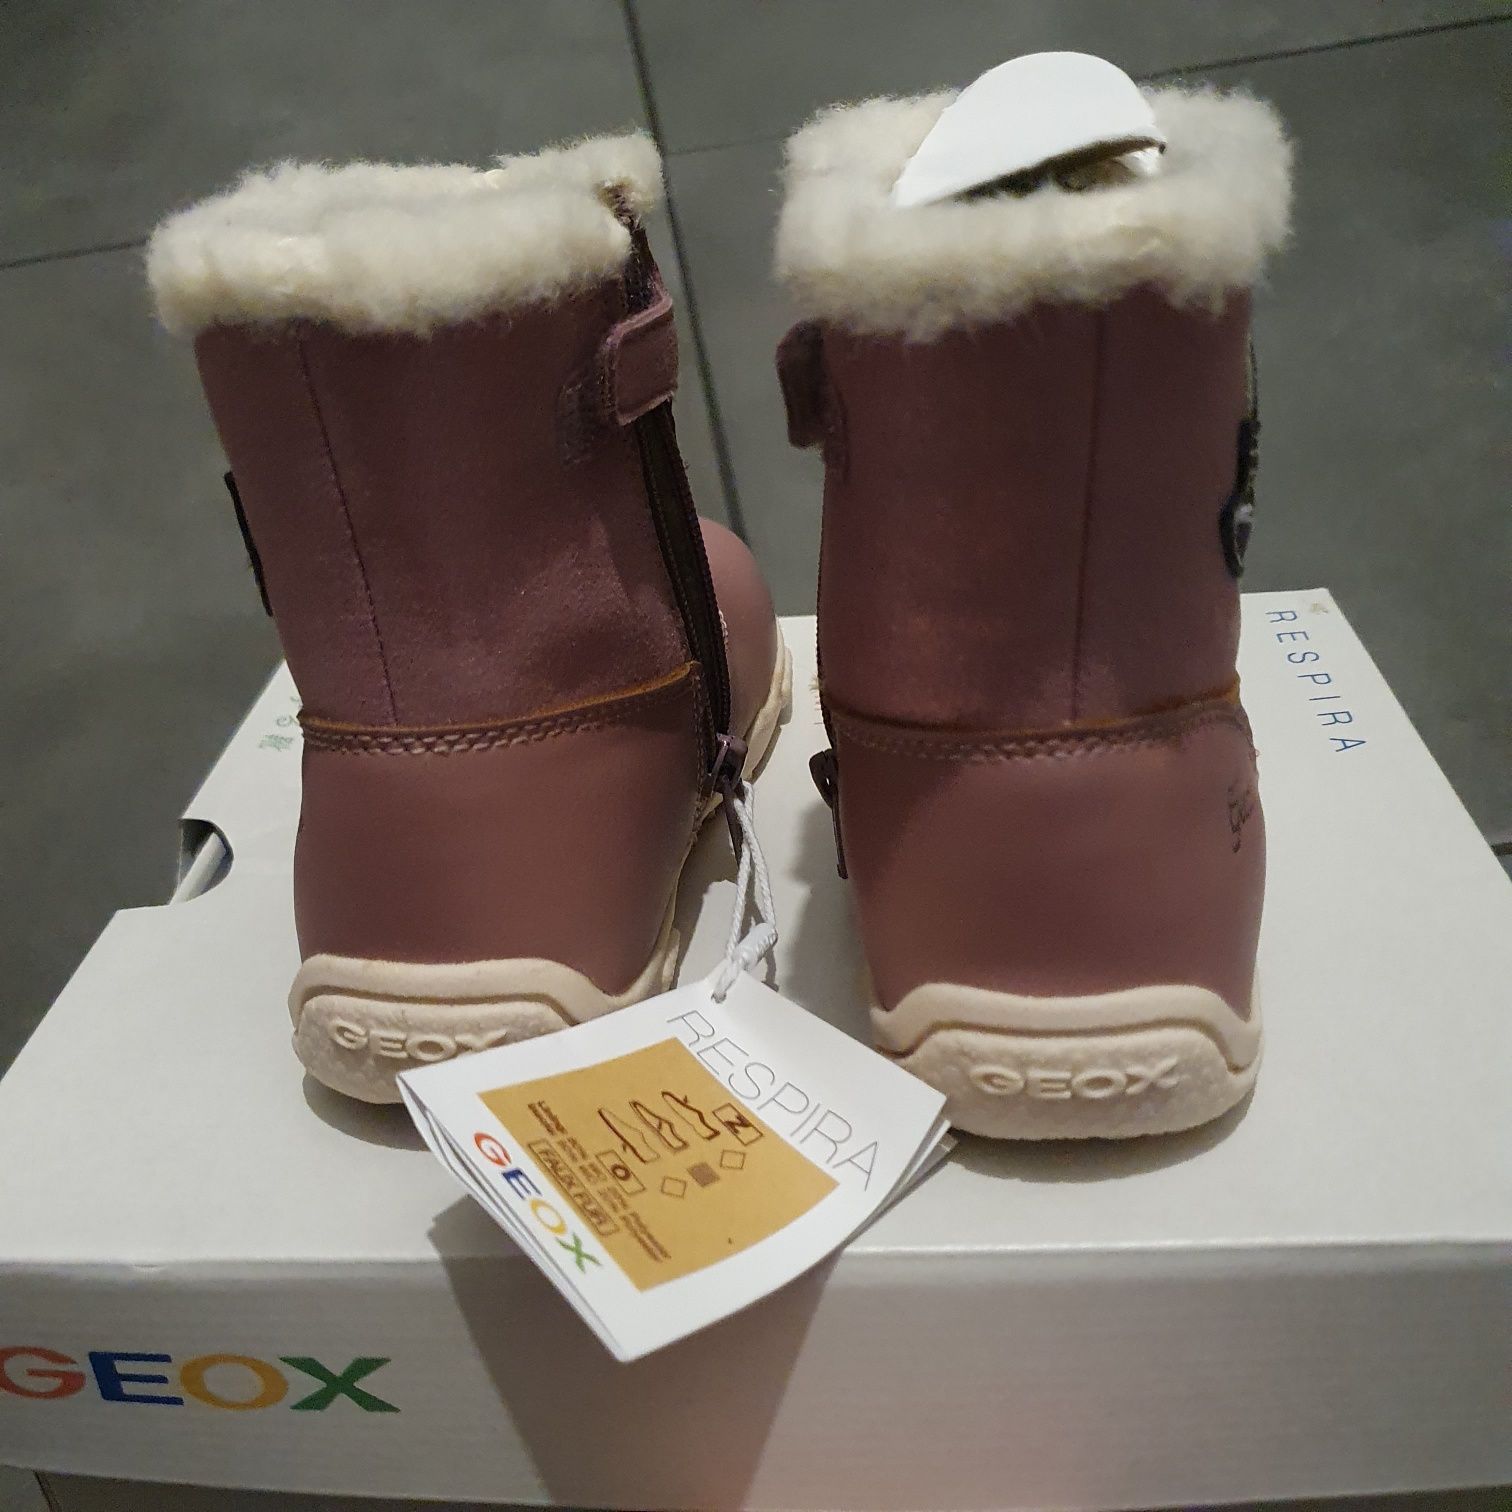 Geox kozaki kozaczki buty zimowe 25